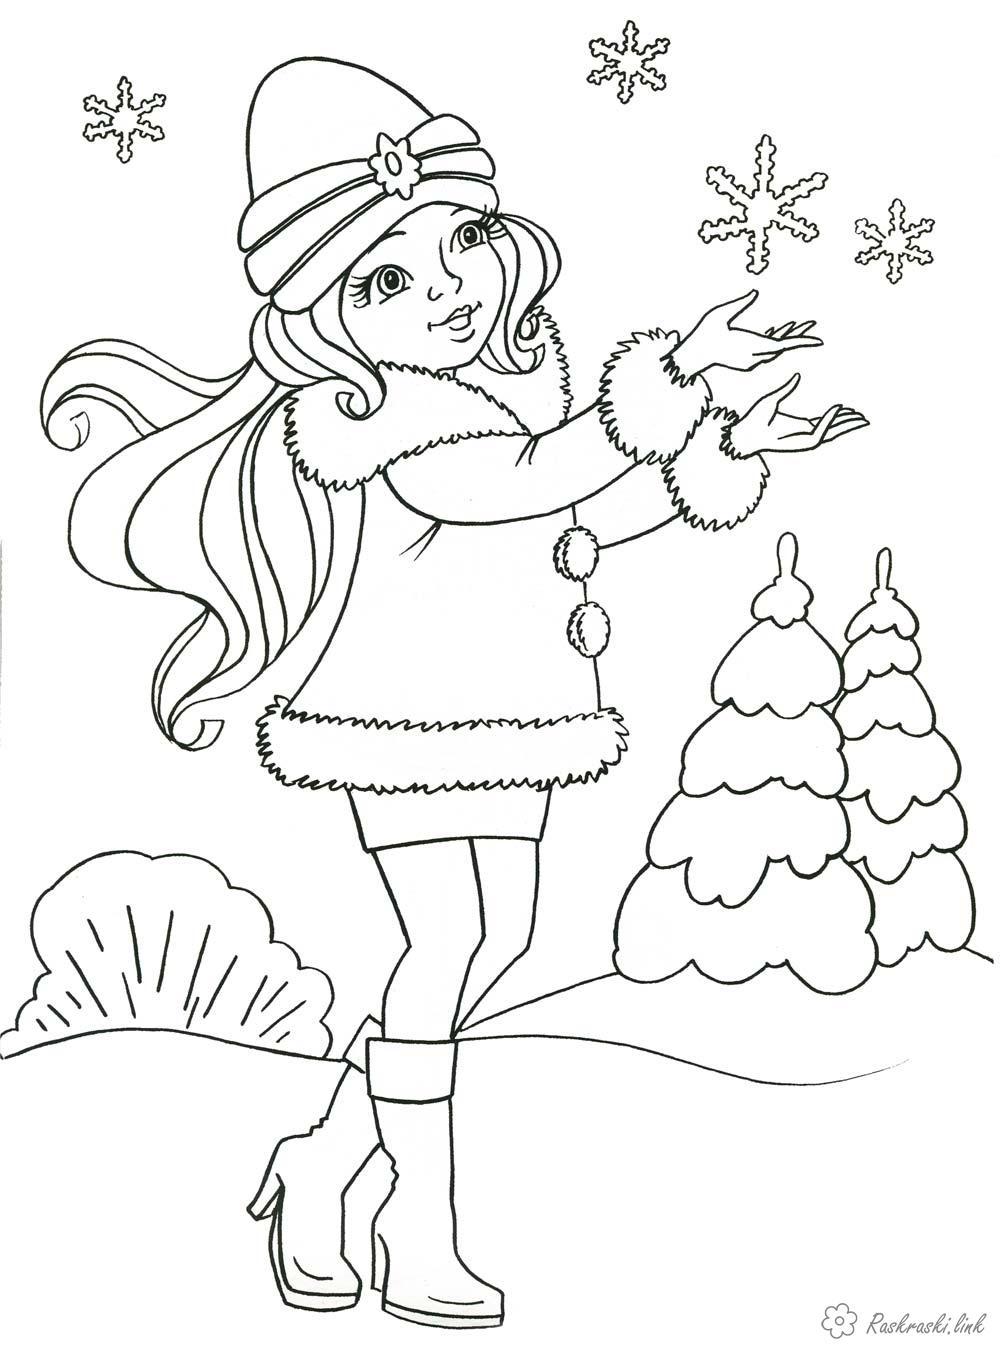 Раскраска. Раскраски для детей на тему зима, новый год, дед мороз, мальчик,  подарки